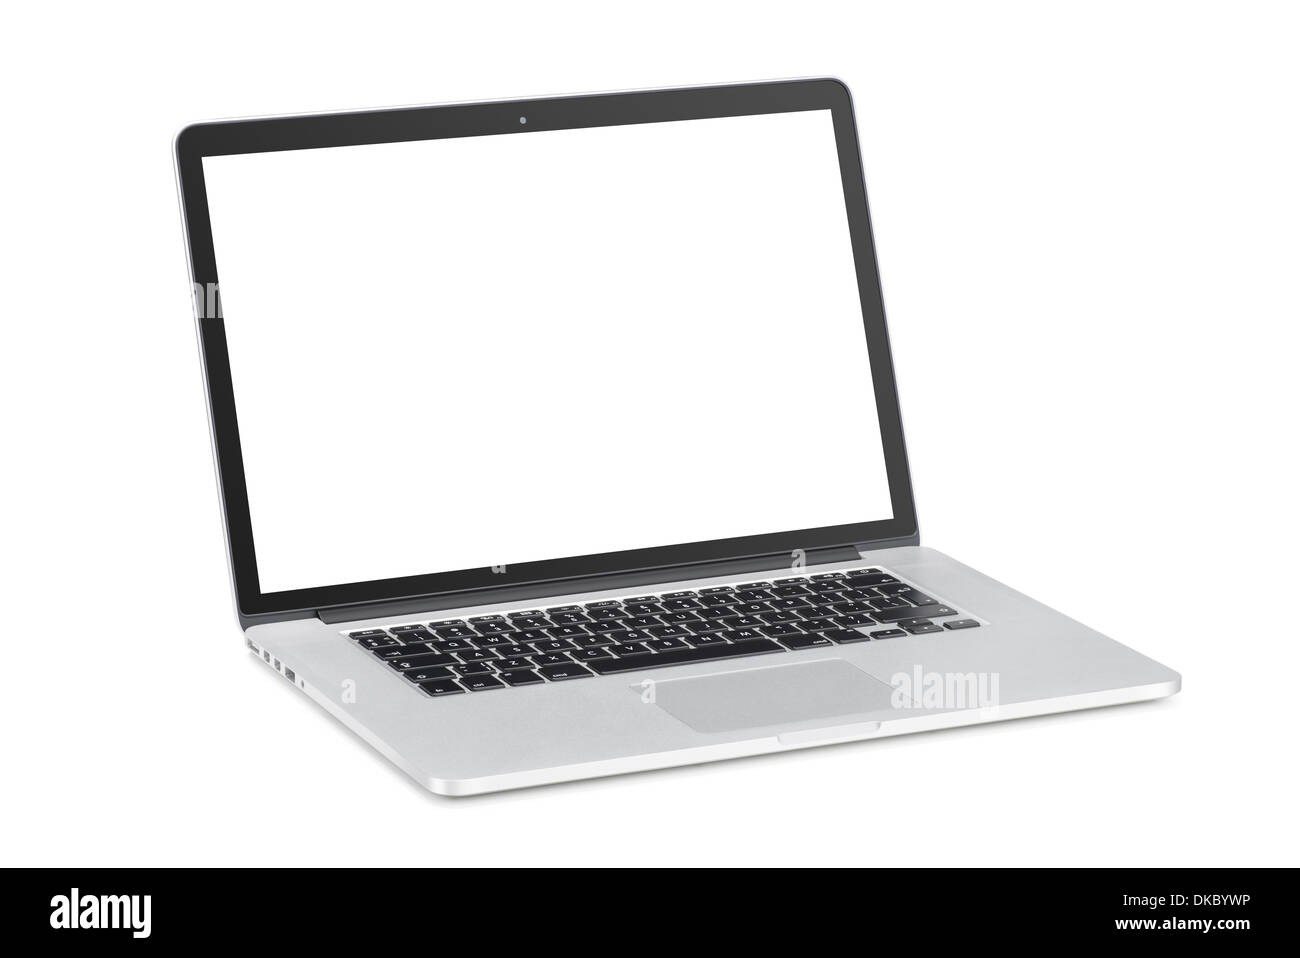 Tourné à un angle léger ordinateur portable moderne avec moniteur blanc incliné en arrière est isolé sur fond blanc. Haute qualité. Banque D'Images